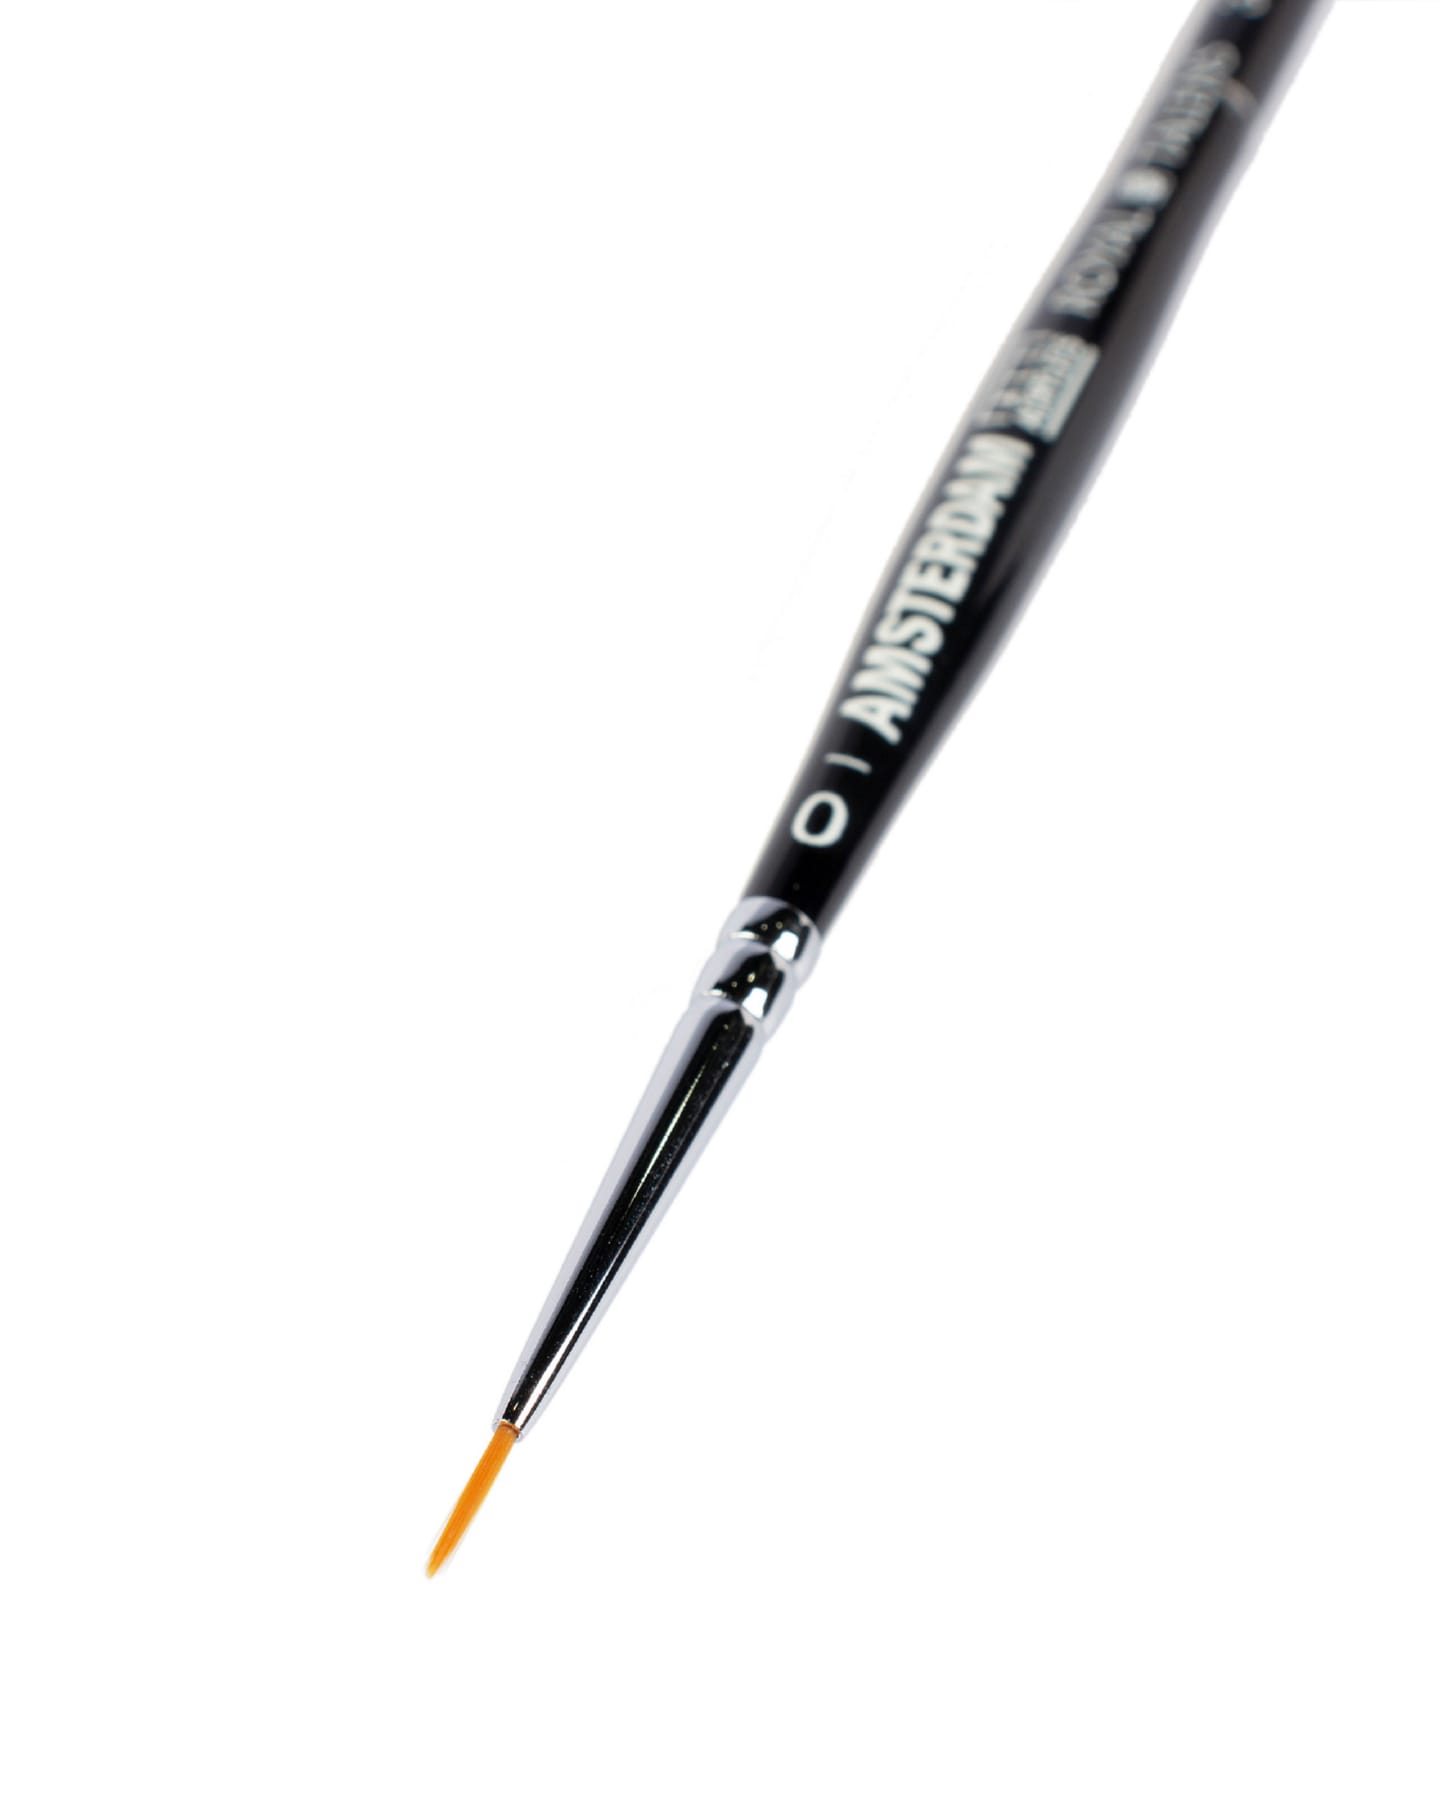 Кисть для акрила Amsterdam 341 синтетика мягкая круглая ручка короткая 5 шт/упак 11 размеров в ассортименте